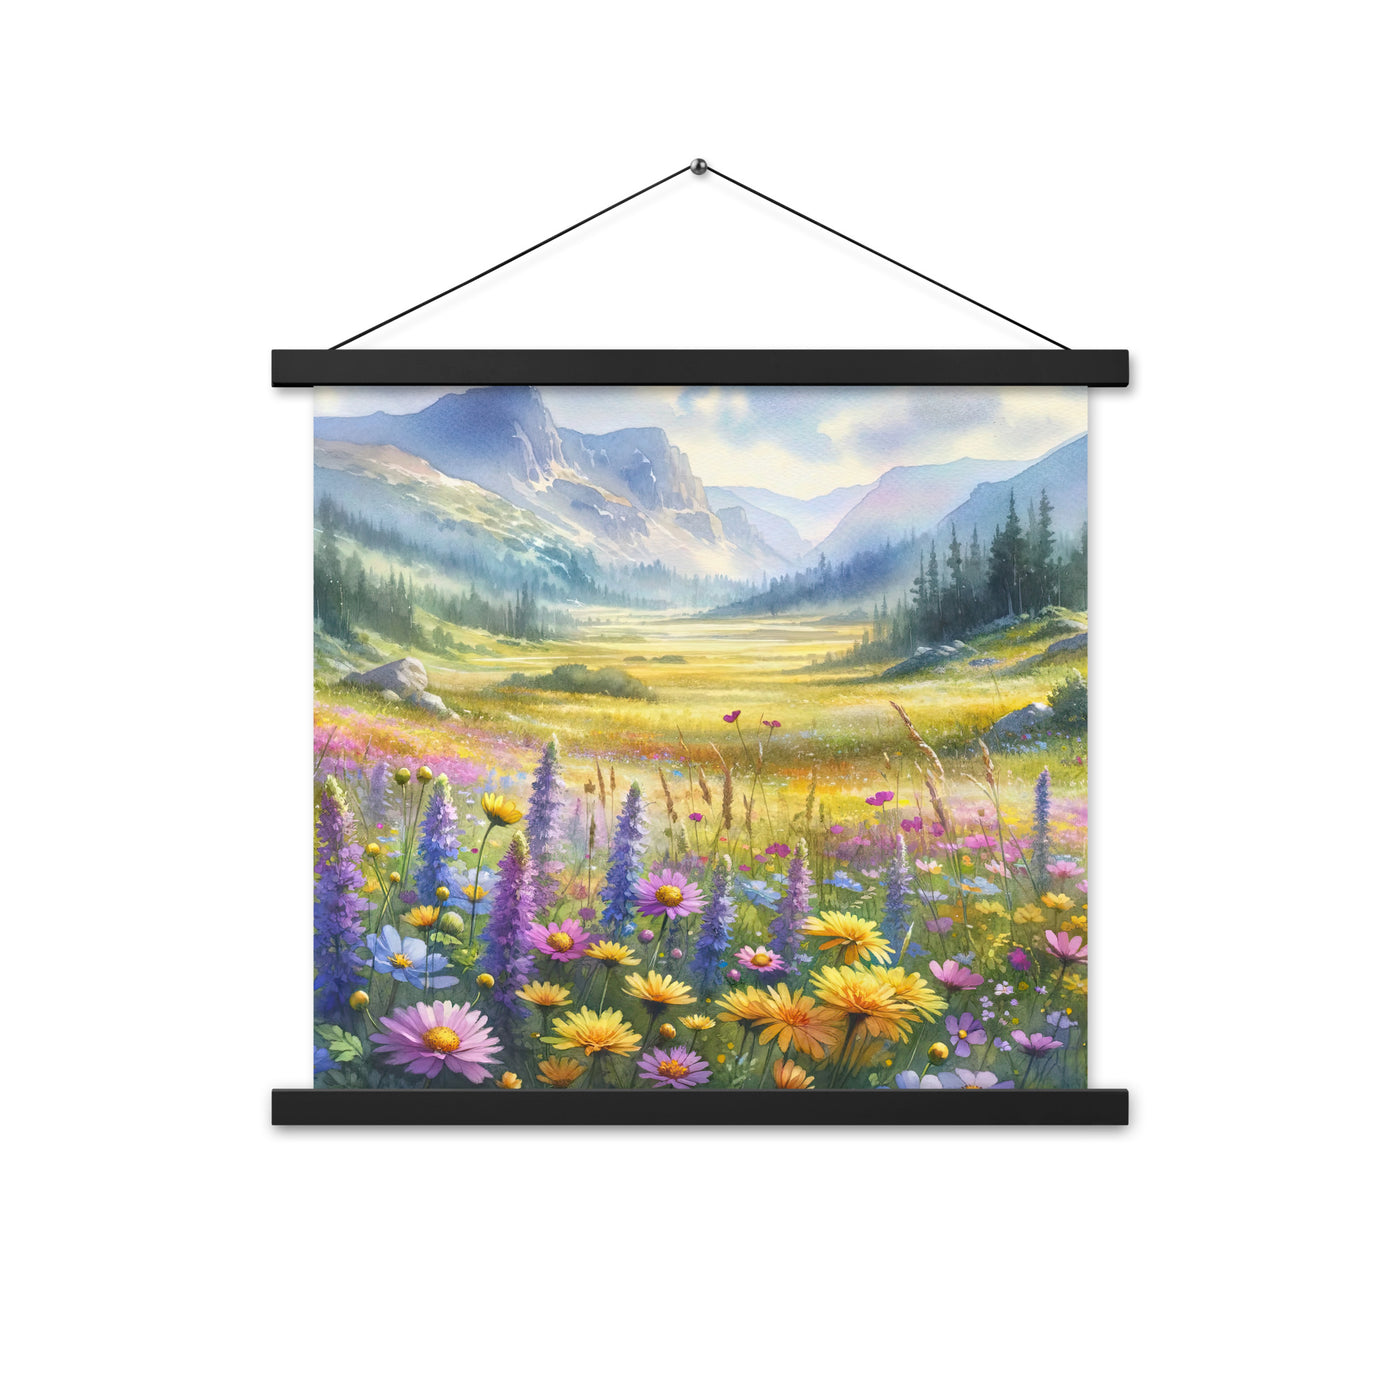 Aquarell einer Almwiese in Ruhe, Wildblumenteppich in Gelb, Lila, Rosa - Premium Poster mit Aufhängung berge xxx yyy zzz 45.7 x 45.7 cm